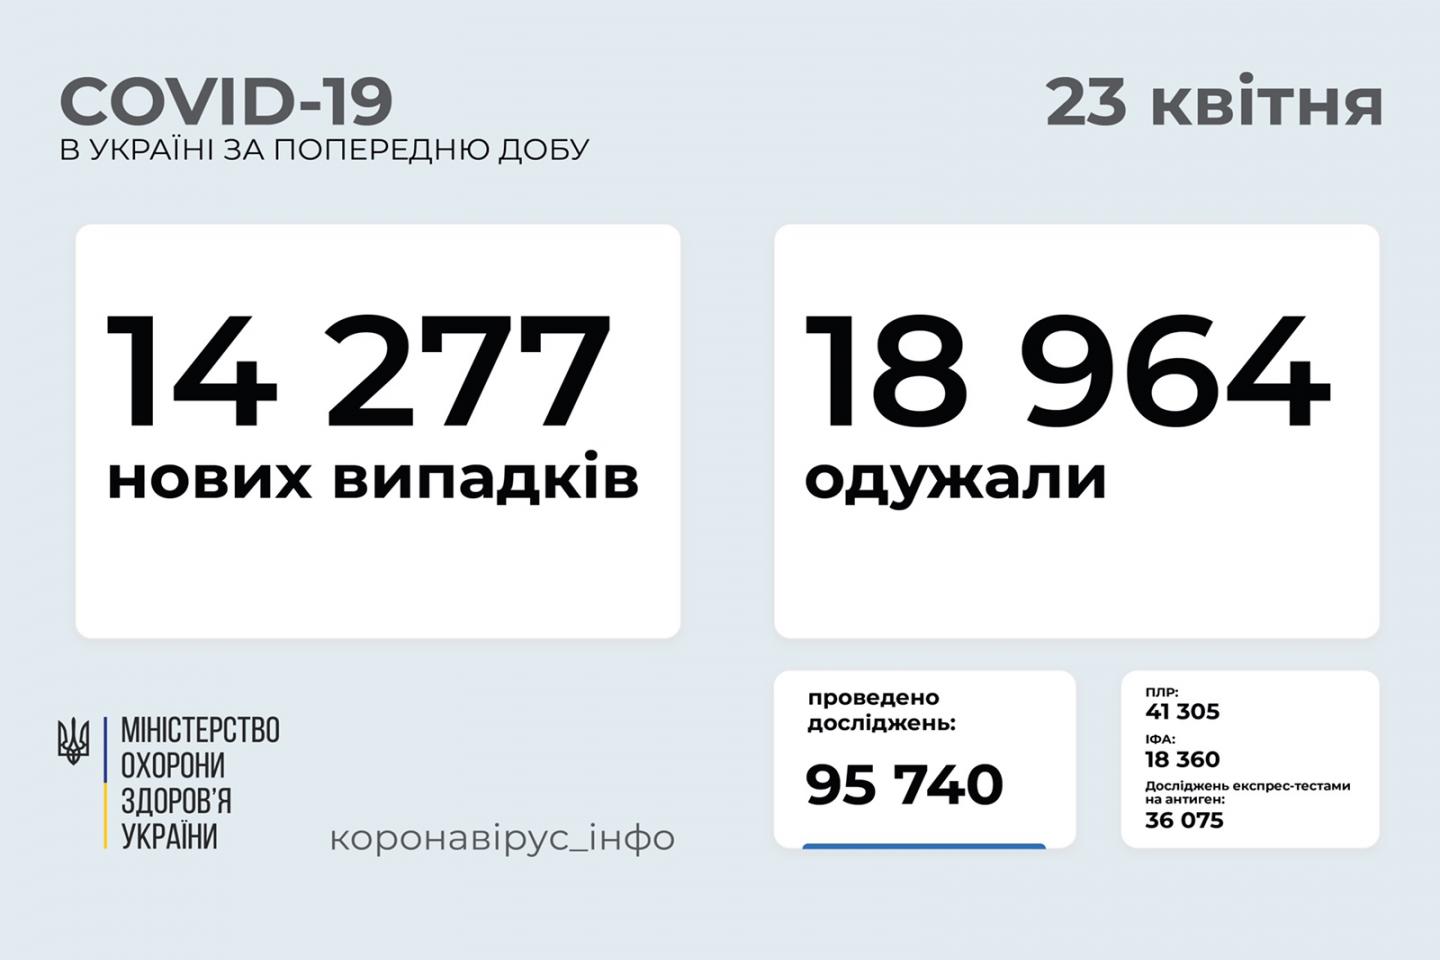 http://dunrada.gov.ua/uploadfile/archive_news/2021/04/23/2021-04-23_4404/images/images-93619.jpg